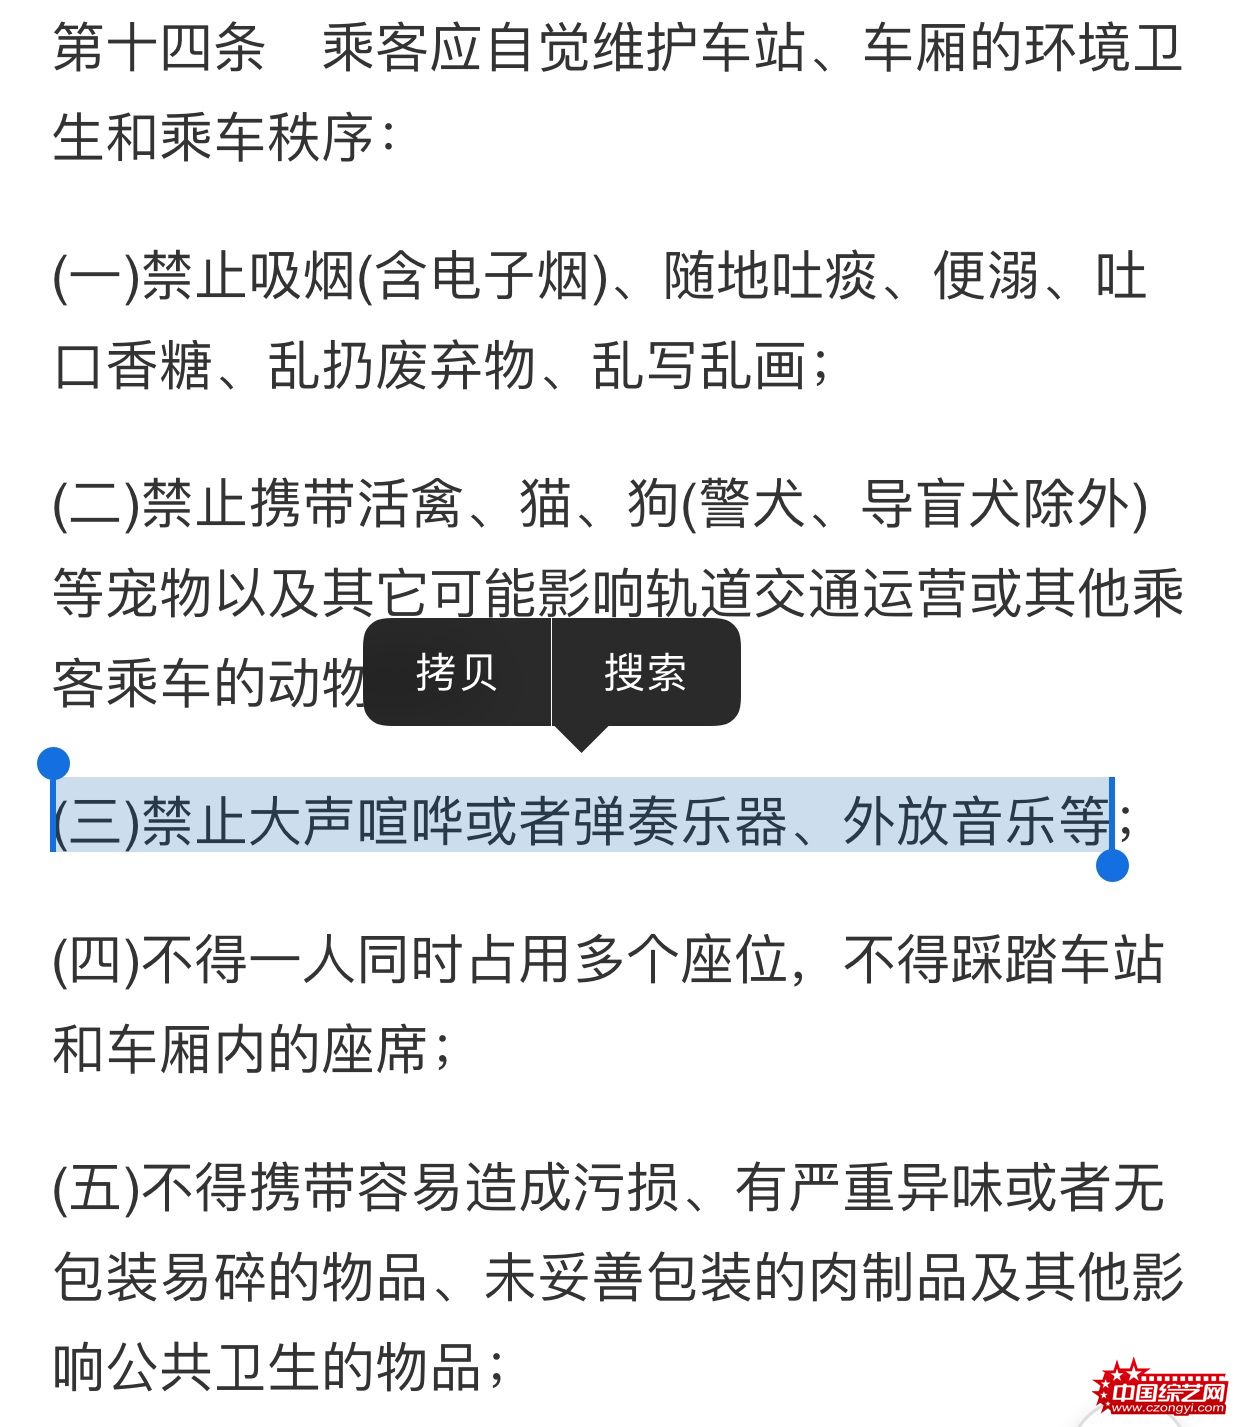 叶璇高铁阻止“外放族”被怼 12306称将加强工作